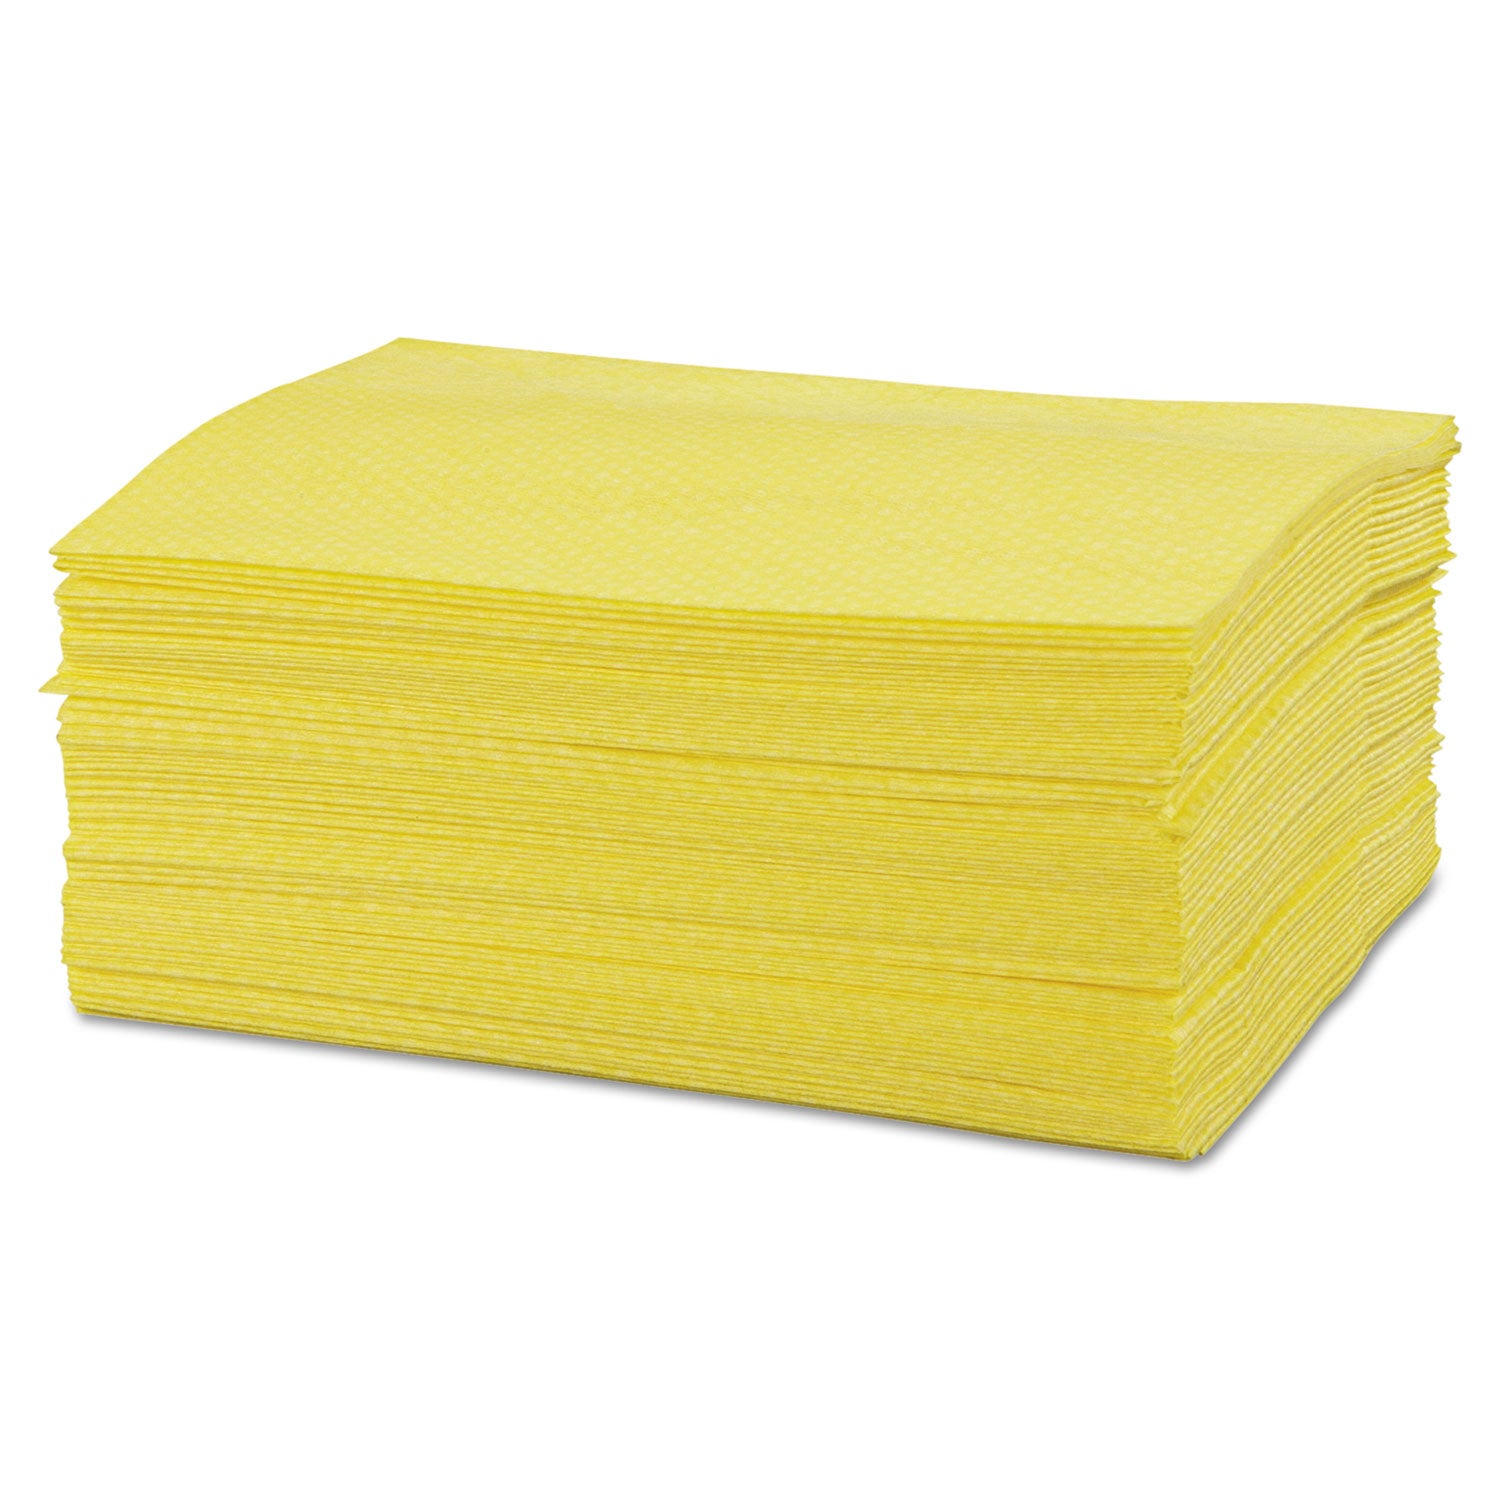 Masslinn Dust Cloths, 1-Ply, 16 x 24, Unscented, Yellow, 50/Pack, 8 Packs/Carton - 